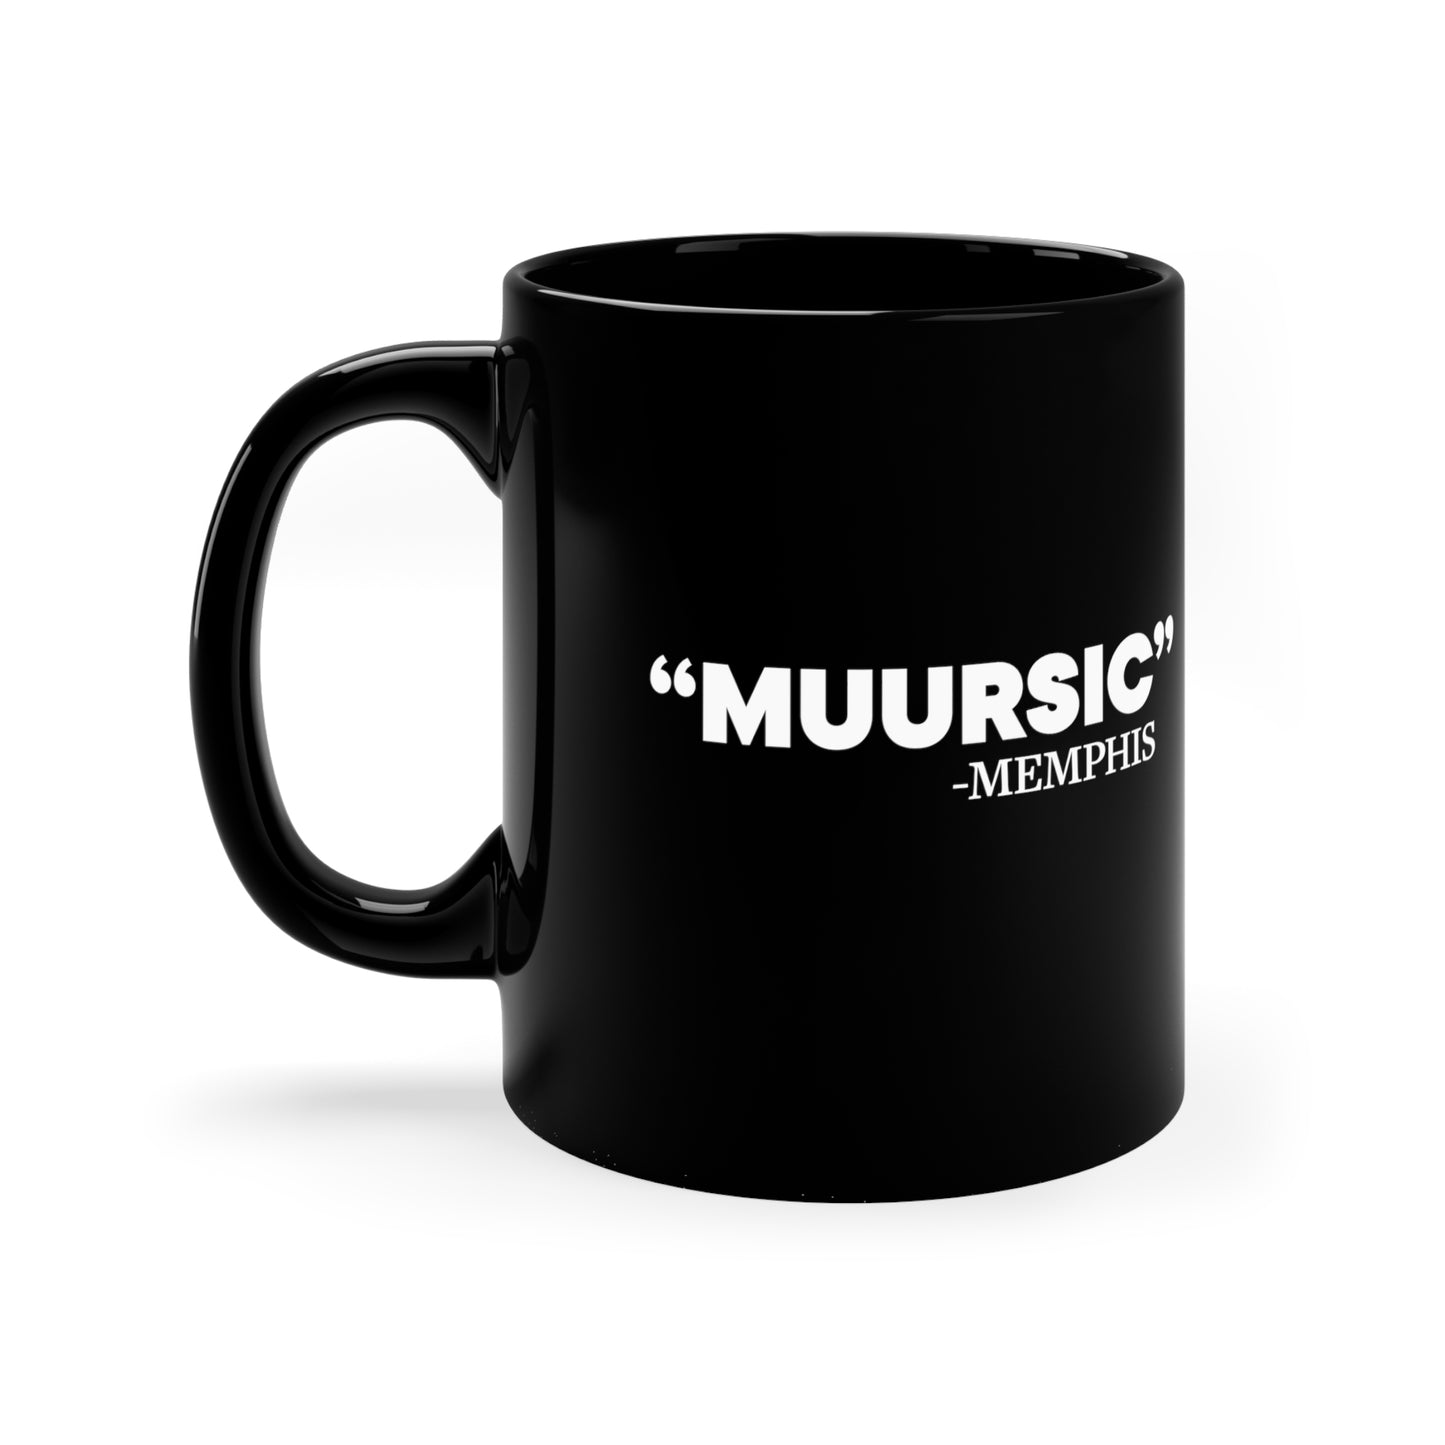 "Muursic" Mug